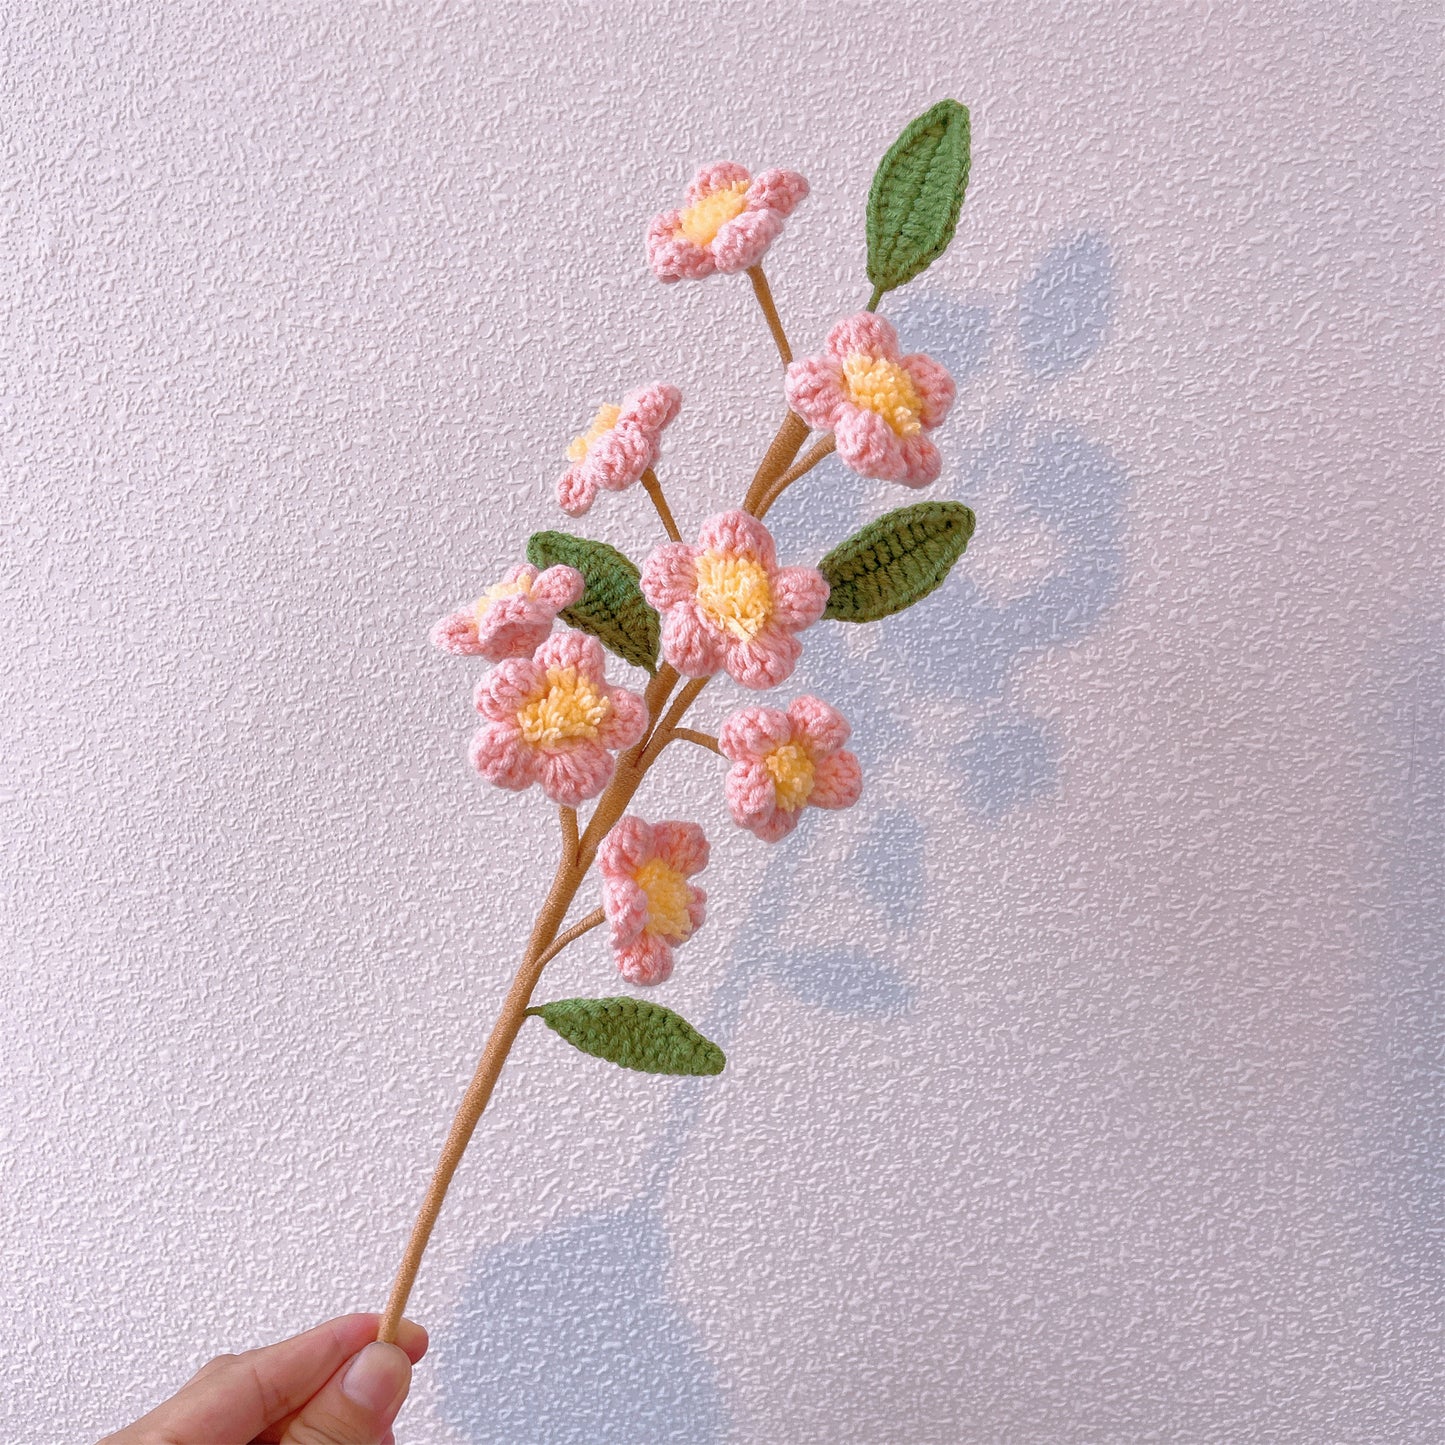 Pfirsich-Perfektion: Handgefertigter gehäkelter Pfirsichblütenstecker für eine wunderschöne Gartendekoration und ein bedeutungsvolles Geschenk